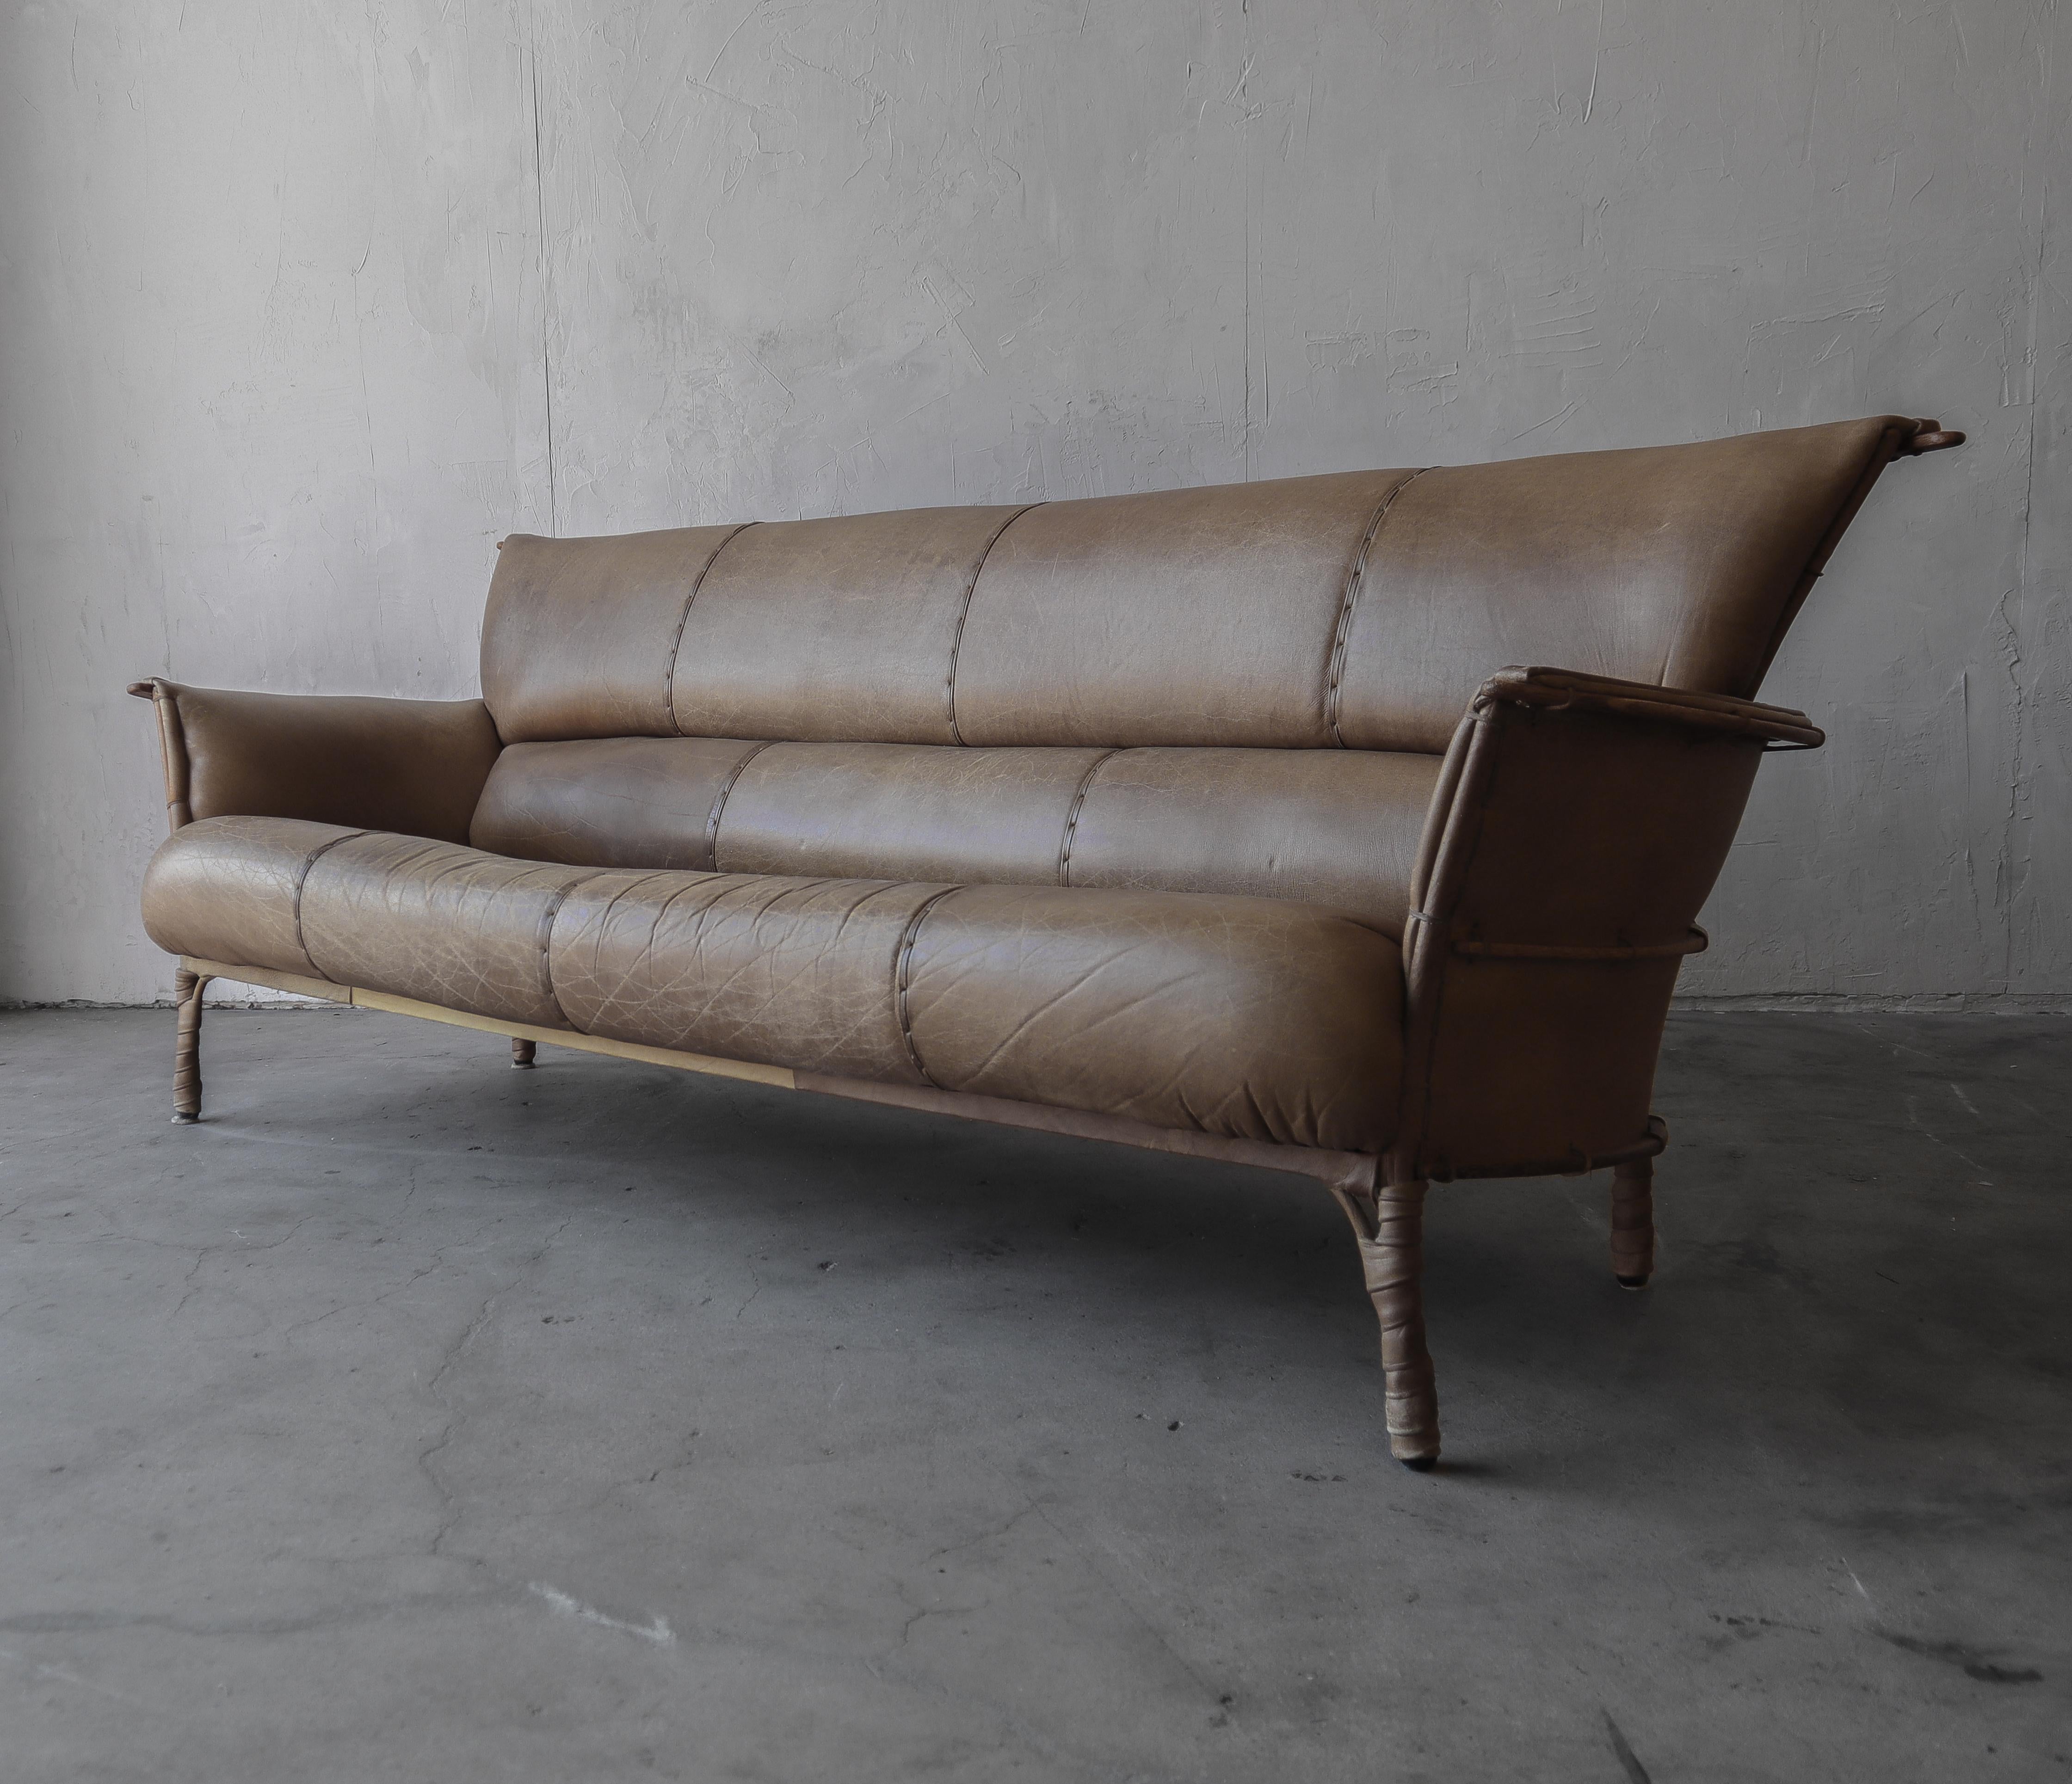 Les meubles durables et magnifiques de Pacific Green constituent un ajout sophistiqué à tout décor. La collection Navajo ne fait pas exception. Cette annonce est pour le canapé Navajo 3 places, nous avons aussi la chaise longue disponible.

Les